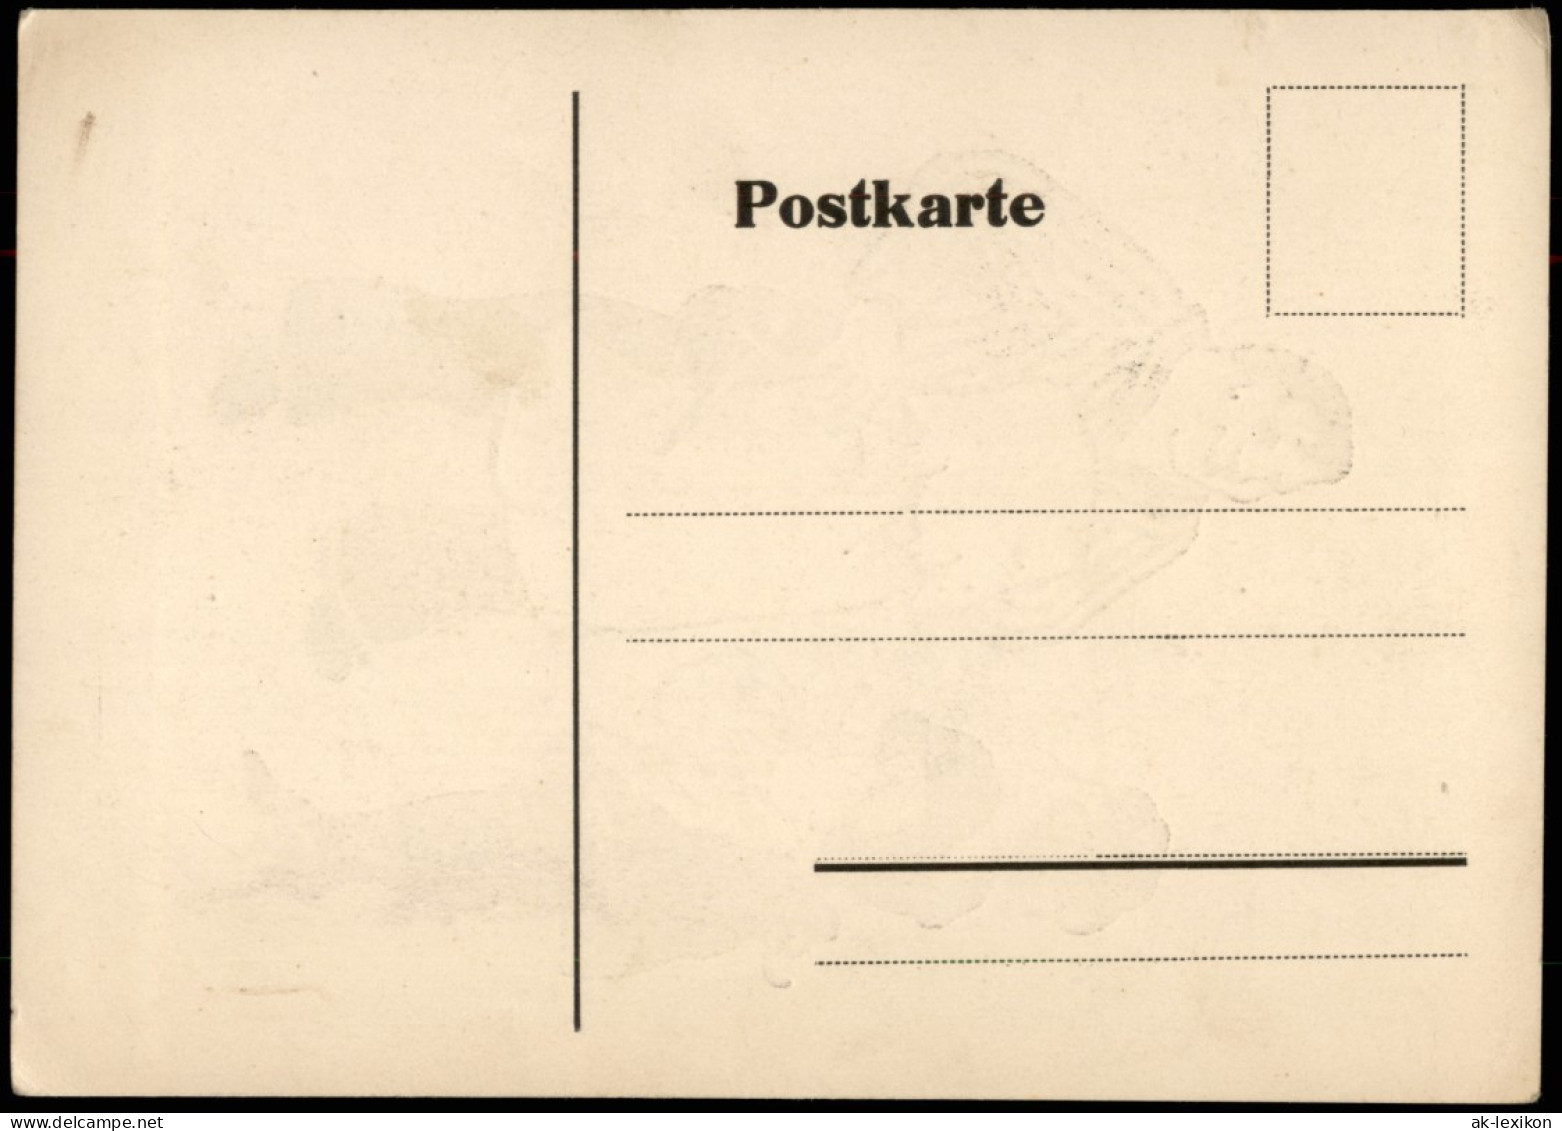 Ansichtskarte  Scherenschnitt/Schattenschnitt Frau Mit Korb Vor Mann 1928 - Silhouetkaarten